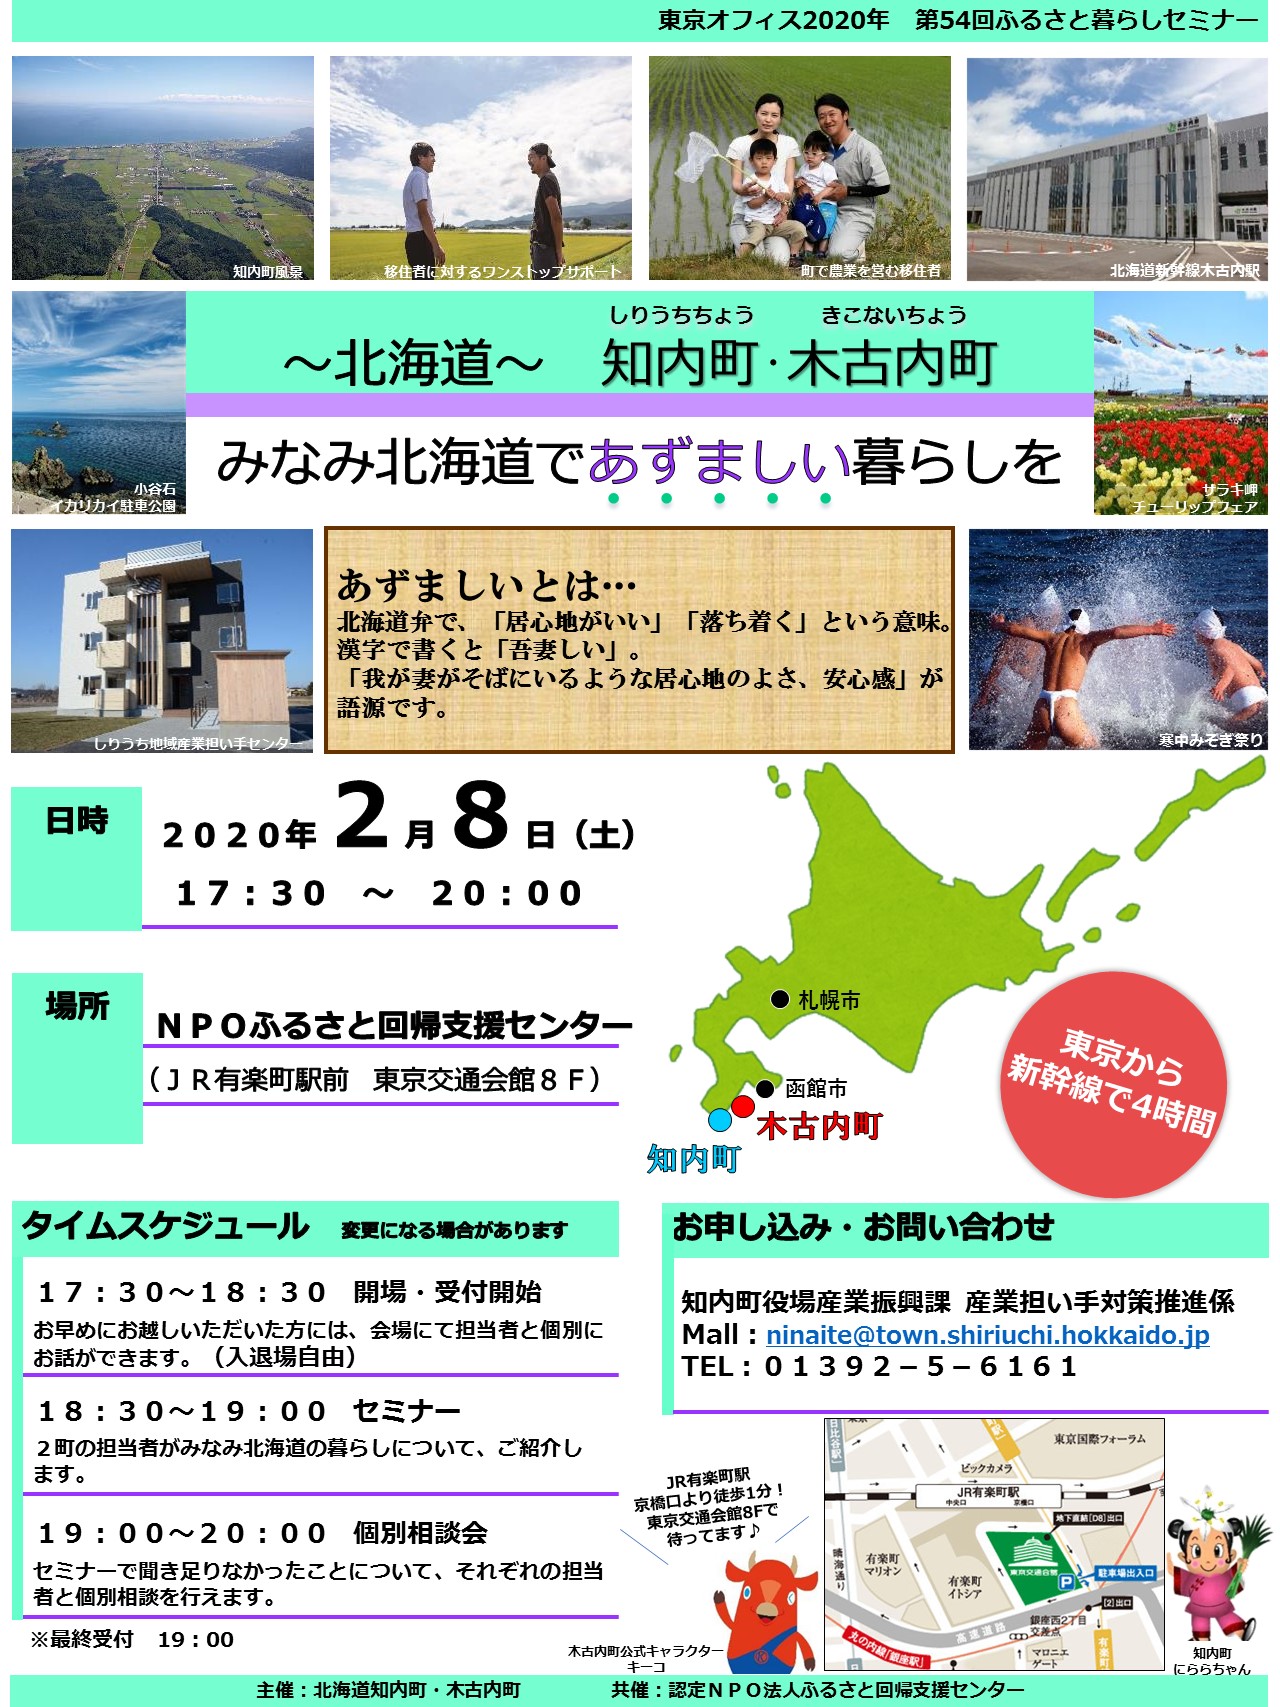 みなみ北海道であずましい暮らしを | 移住関連イベント情報